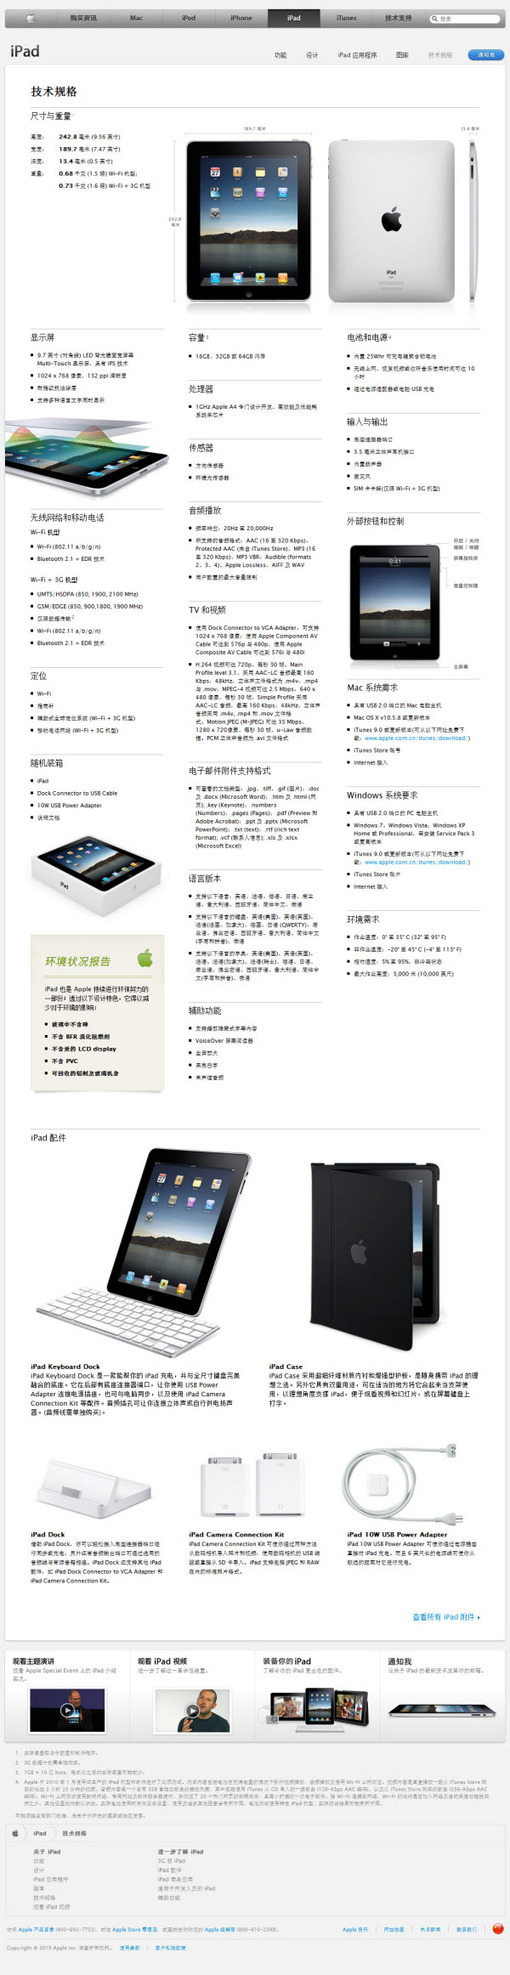 Apple - iPad - 鿴 iPad .jpg